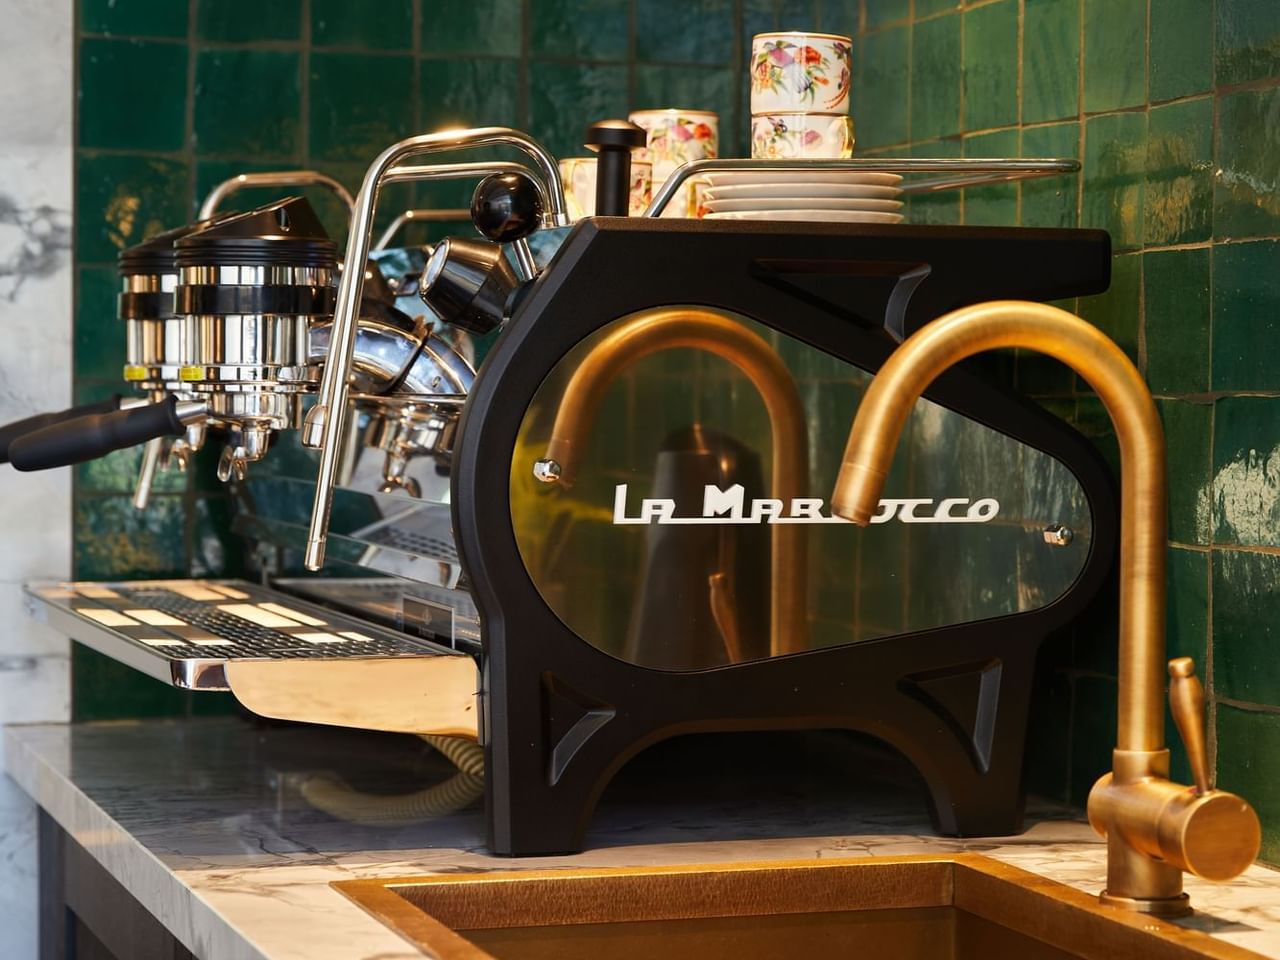 El Prado Coffee Bar